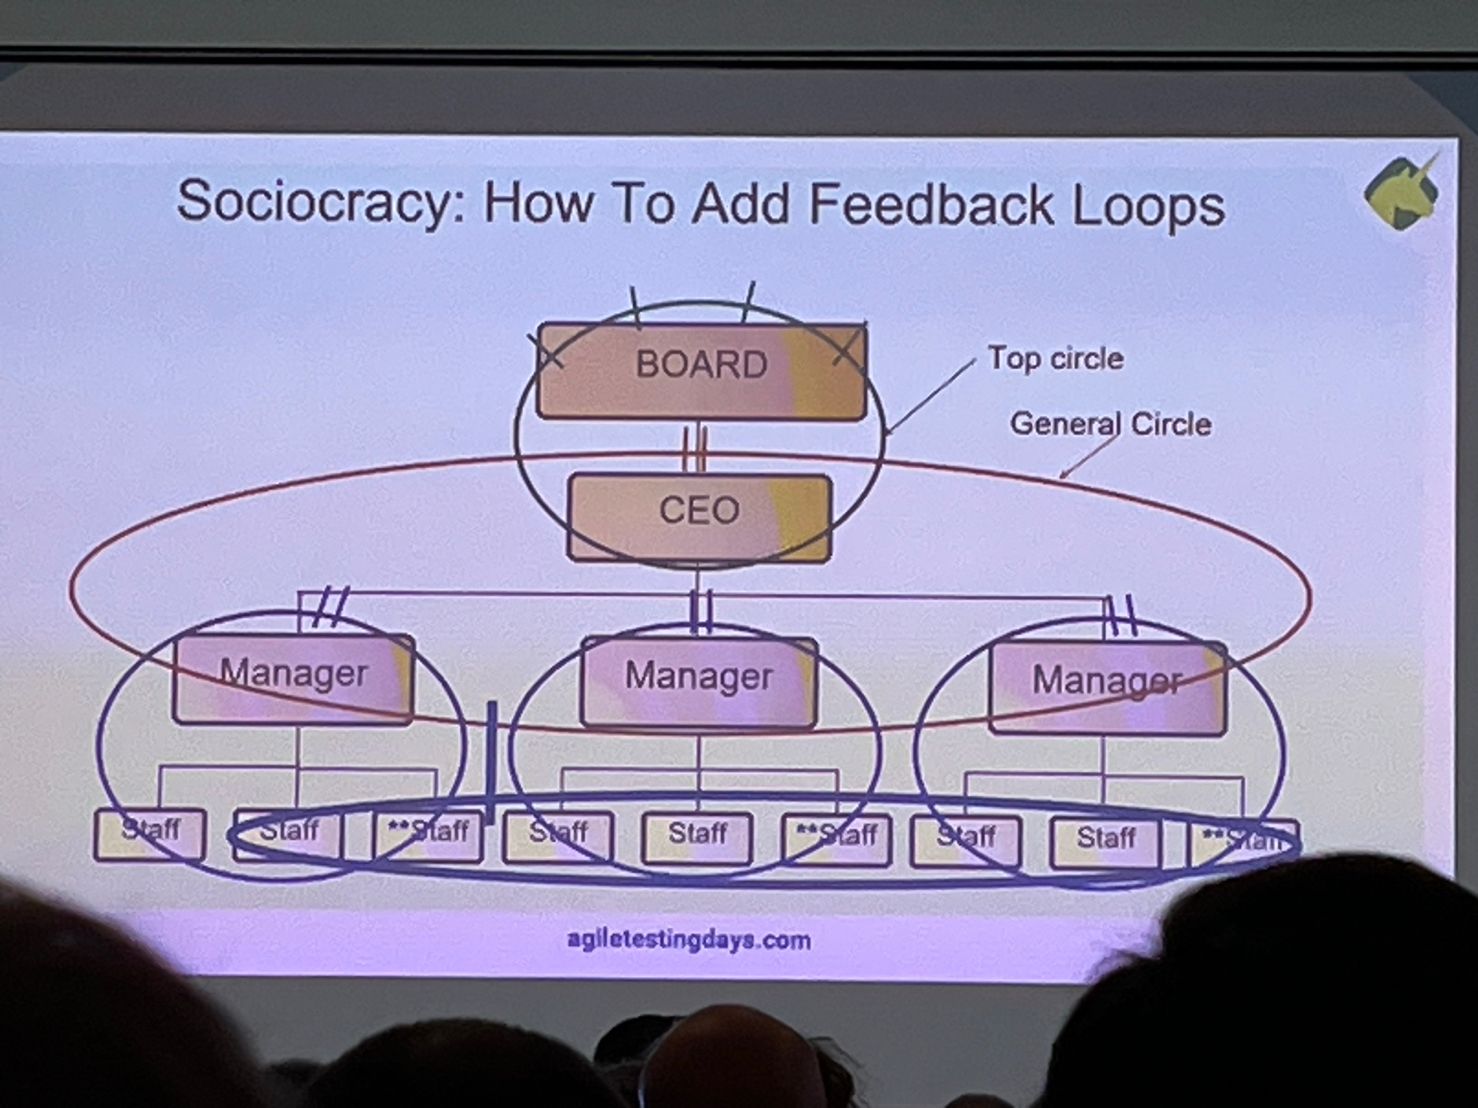 Sociocracy: How to add feedback loops